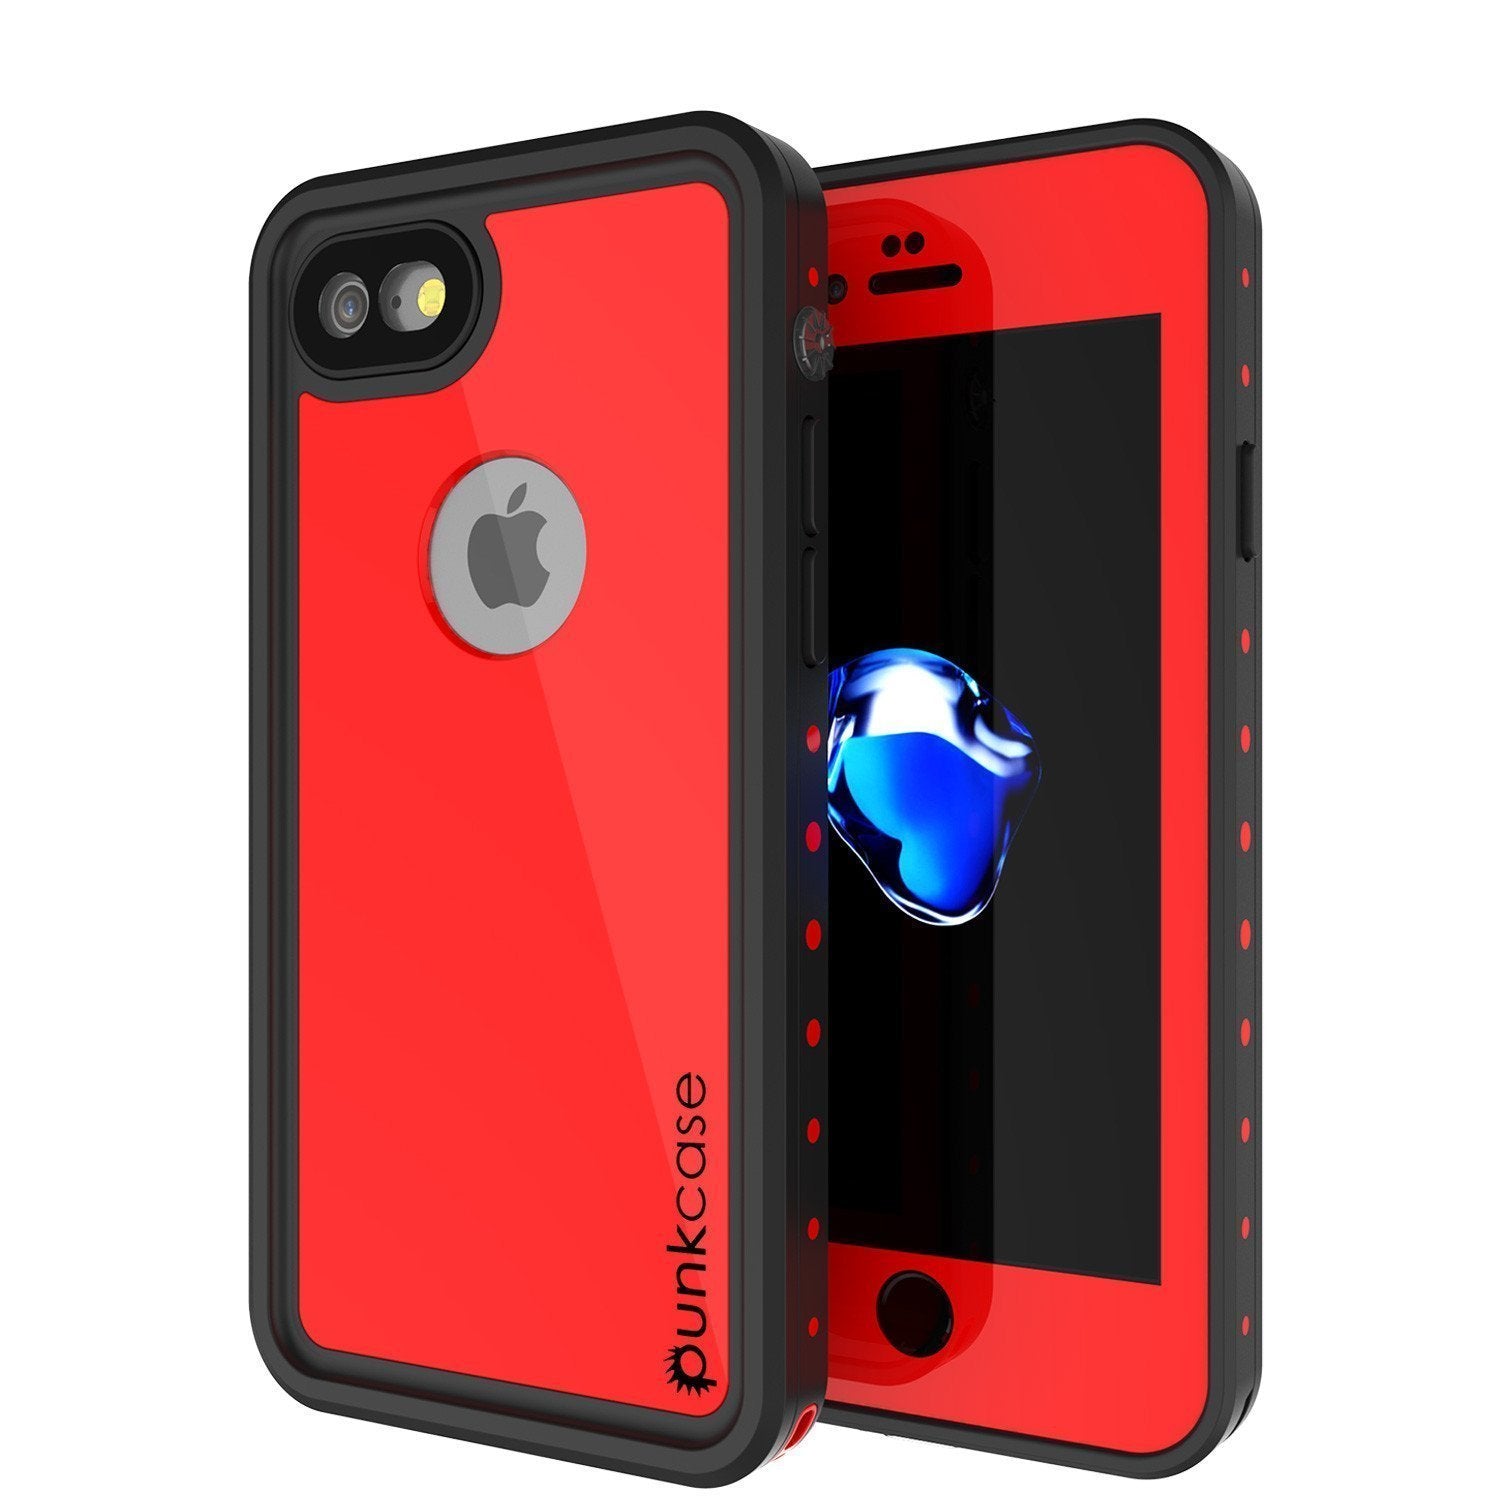 iPhone SE (4.7") Waterproof Case, Punkcase [Red] [StudStar Series] [Slim Fit] [IP68 Certified]  [Dirtproof] [Snowproof] (Color in image: red)